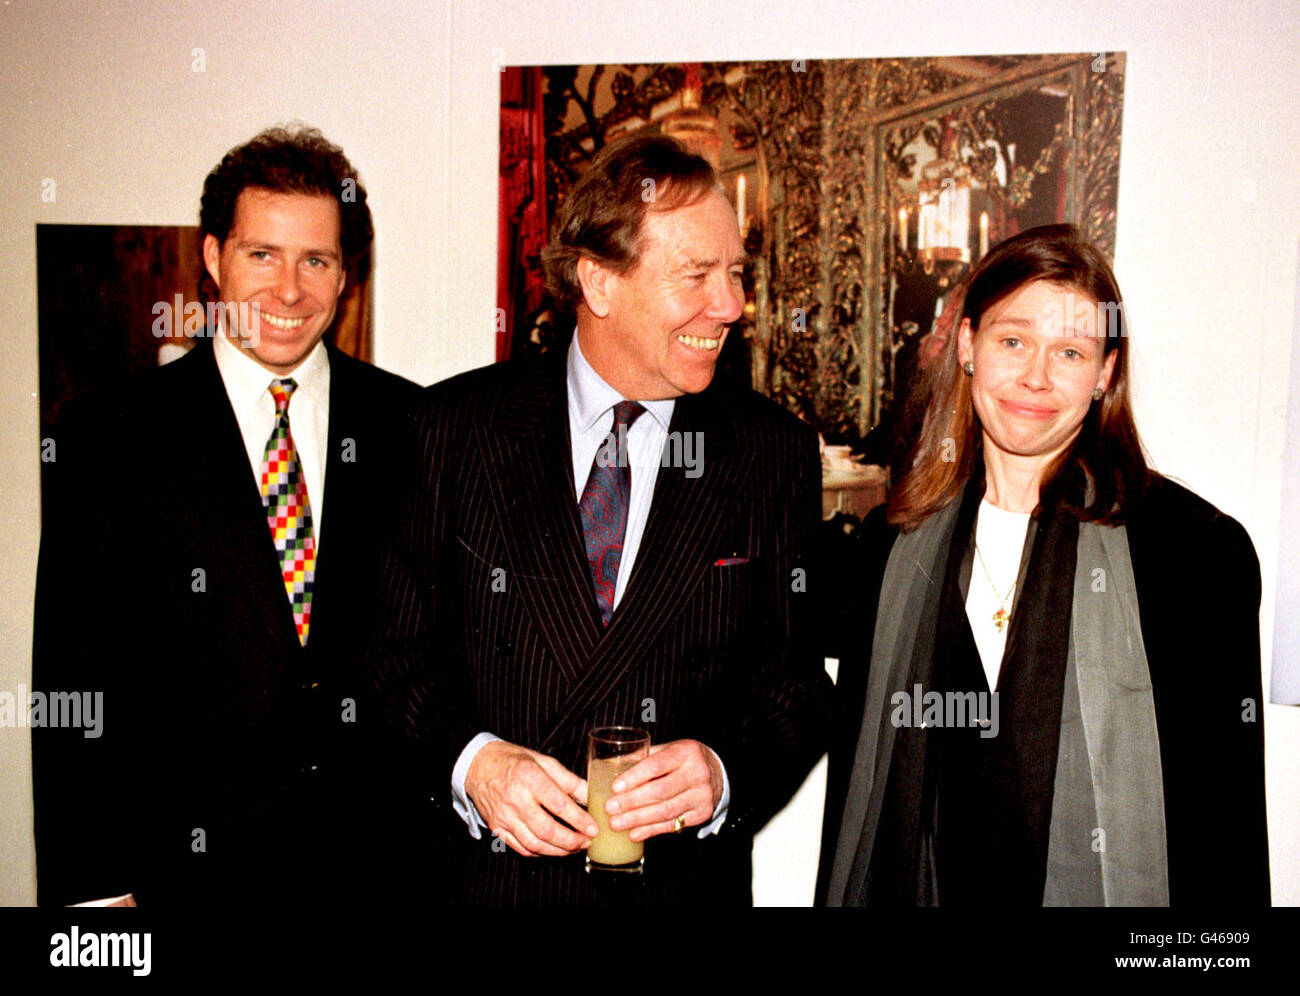 Londra : 13/1/97 : Lord Snowdon (CTR) e i suoi figli David Linley e Sarah CHATTO AL LANCIO DI UNA MOSTRA DI SNOWDON LE FOTOGRAFIE. PA NEWS FOTO DA DAVE CHESKIN. Foto Stock